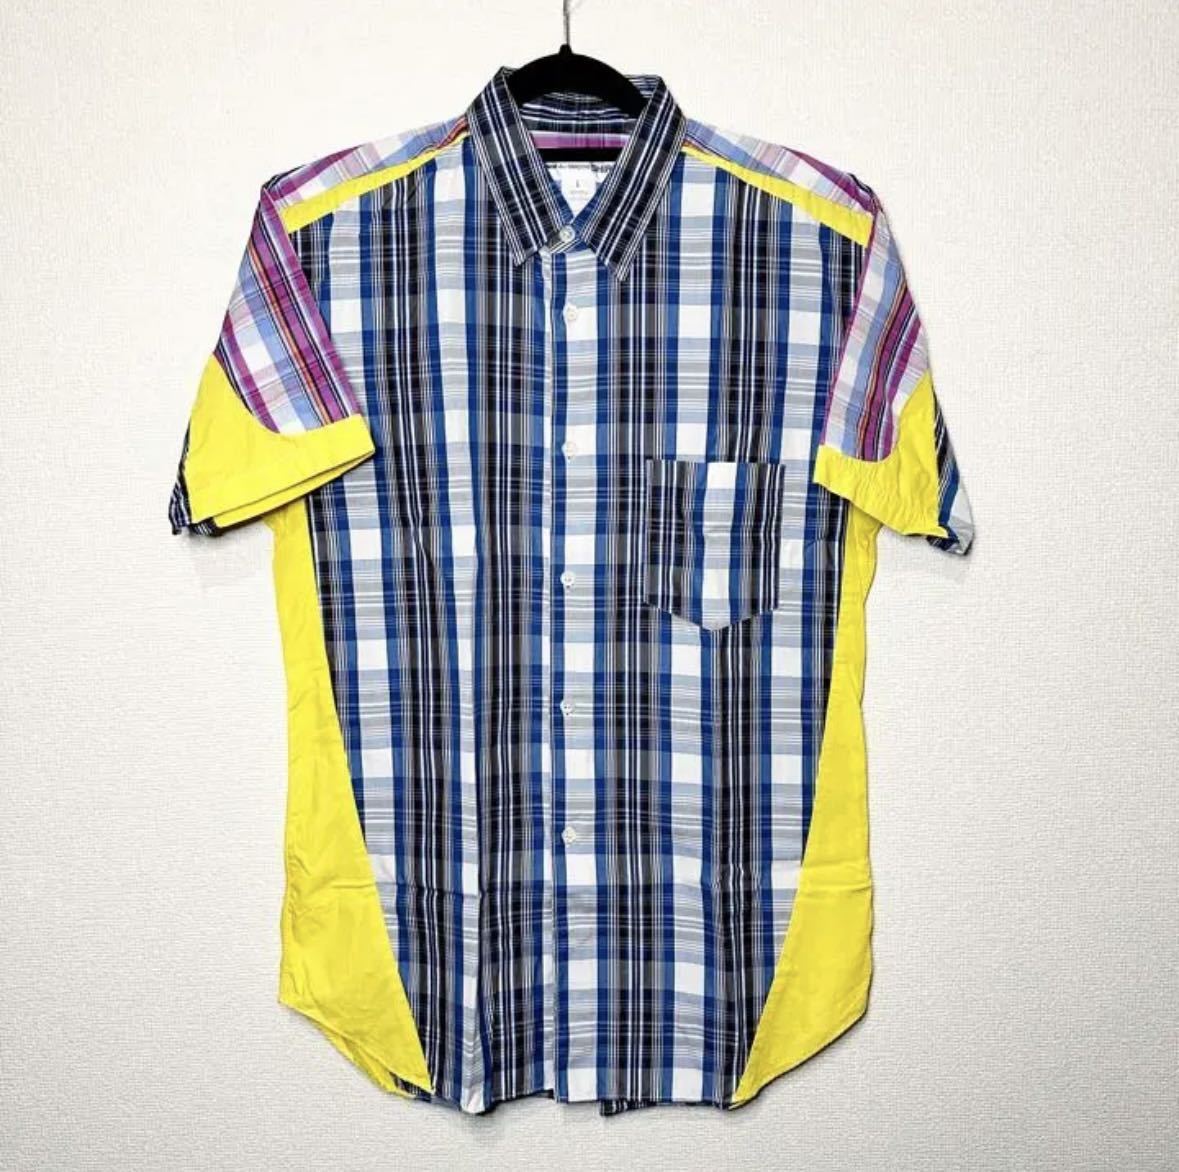 【日本限定モデル】 COMME 半袖パッチワークシャツ 13SS SHIRT GARCONS des 半袖シャツ